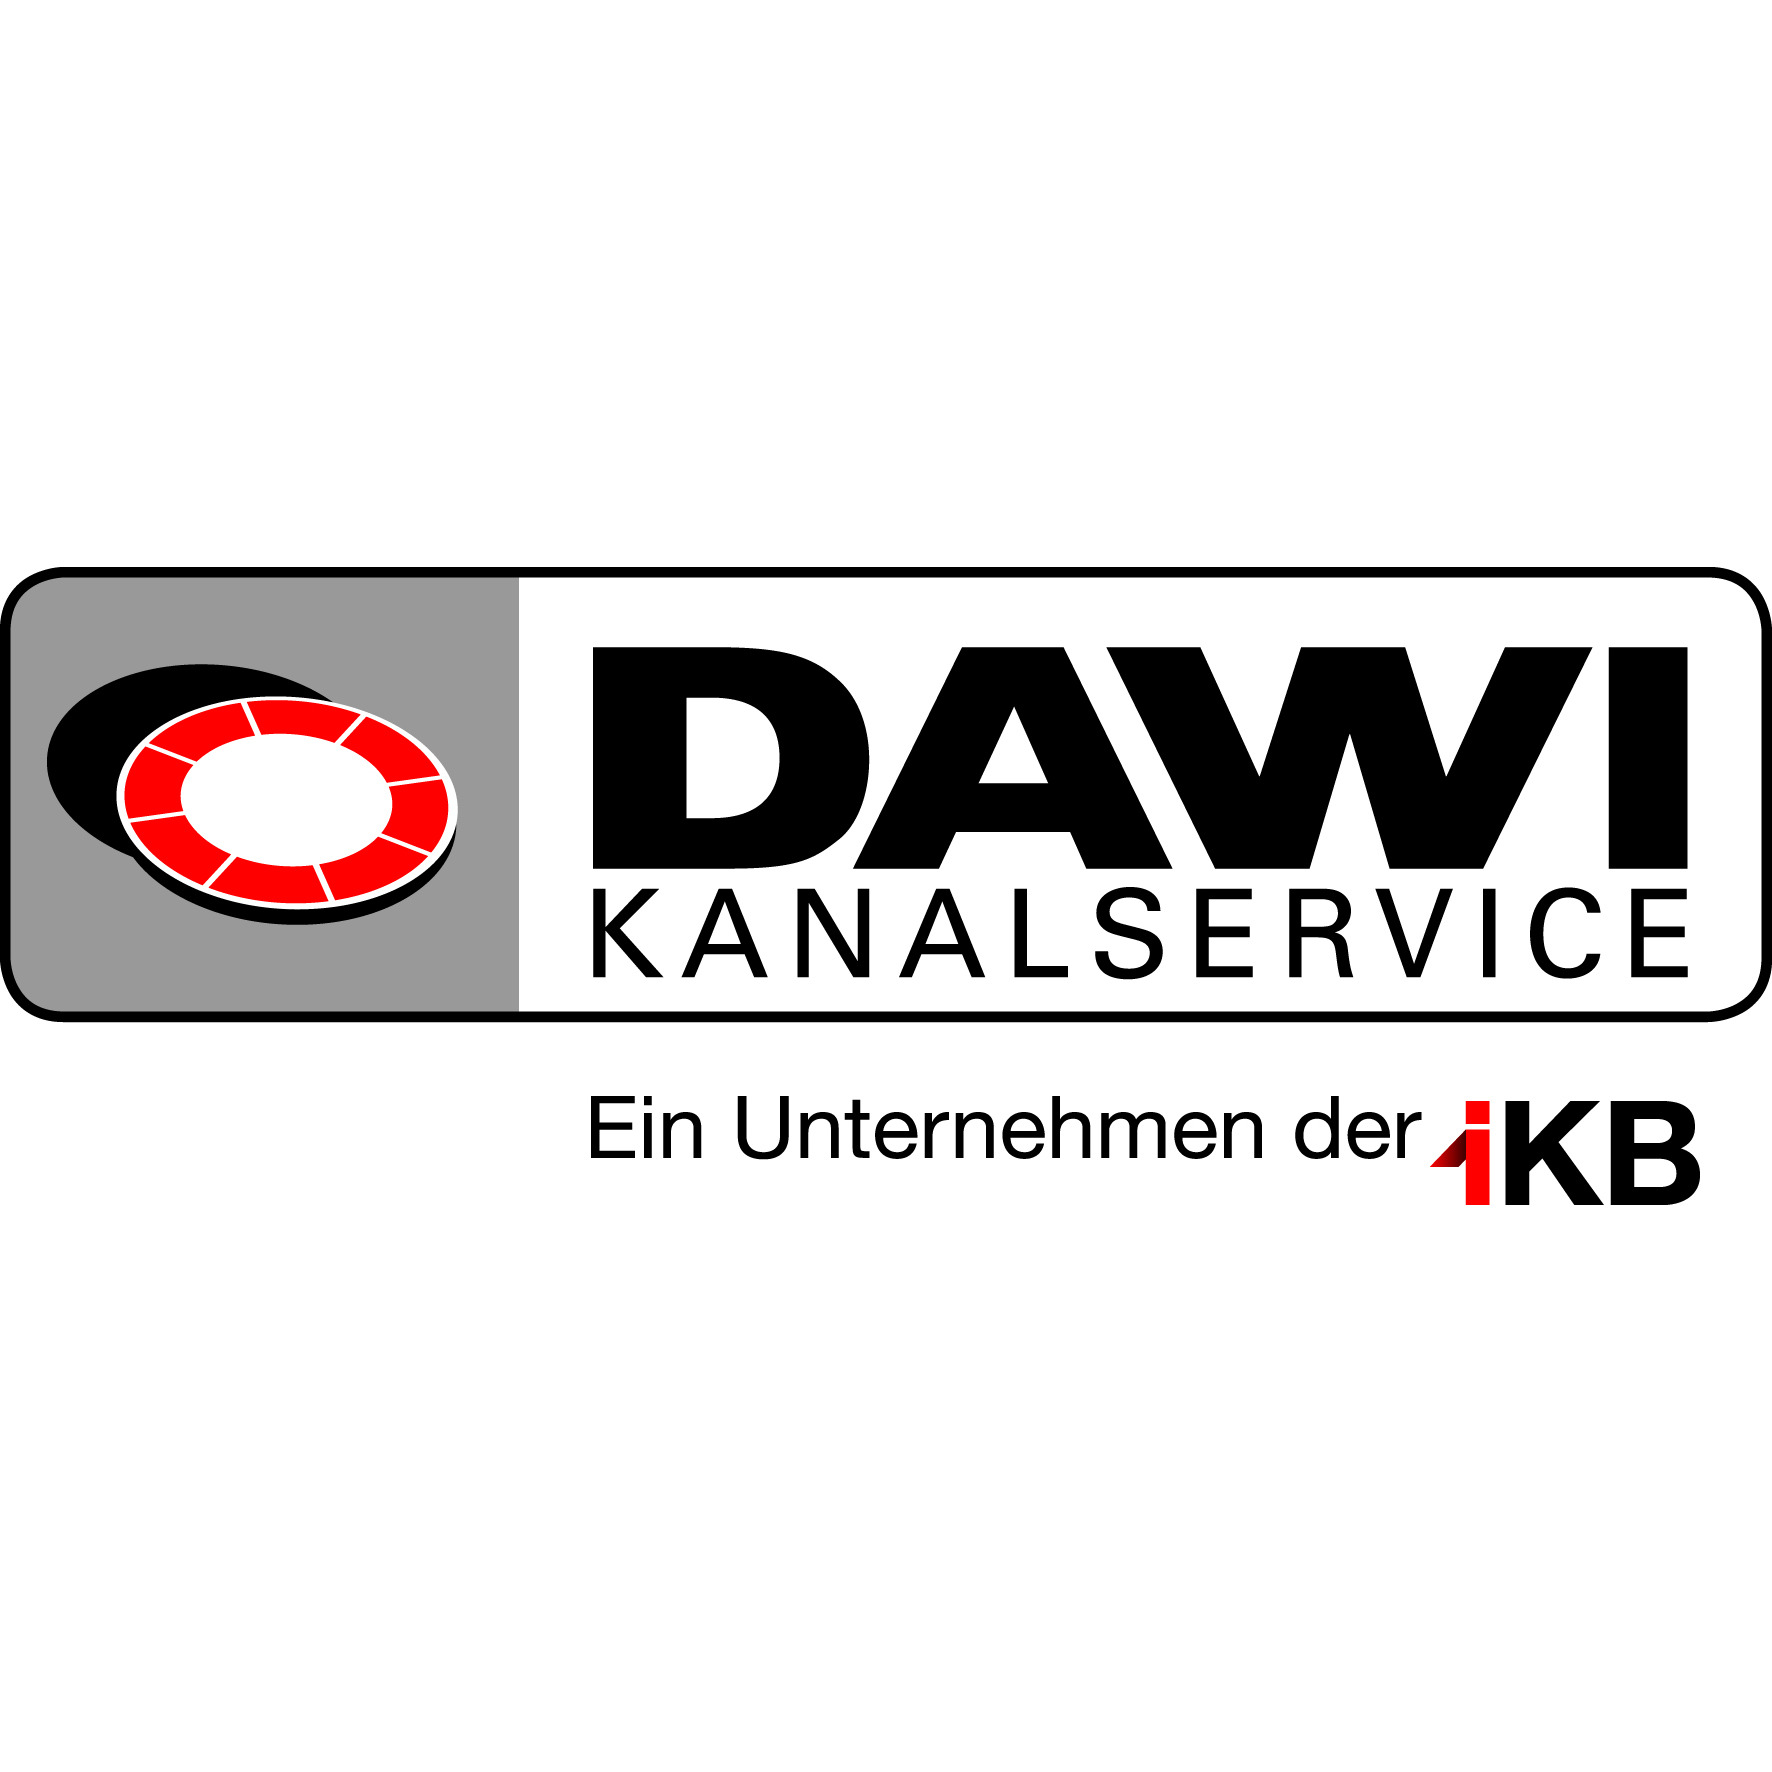 DAWI Kanalservice GmbH in 6130 Schwaz Logo